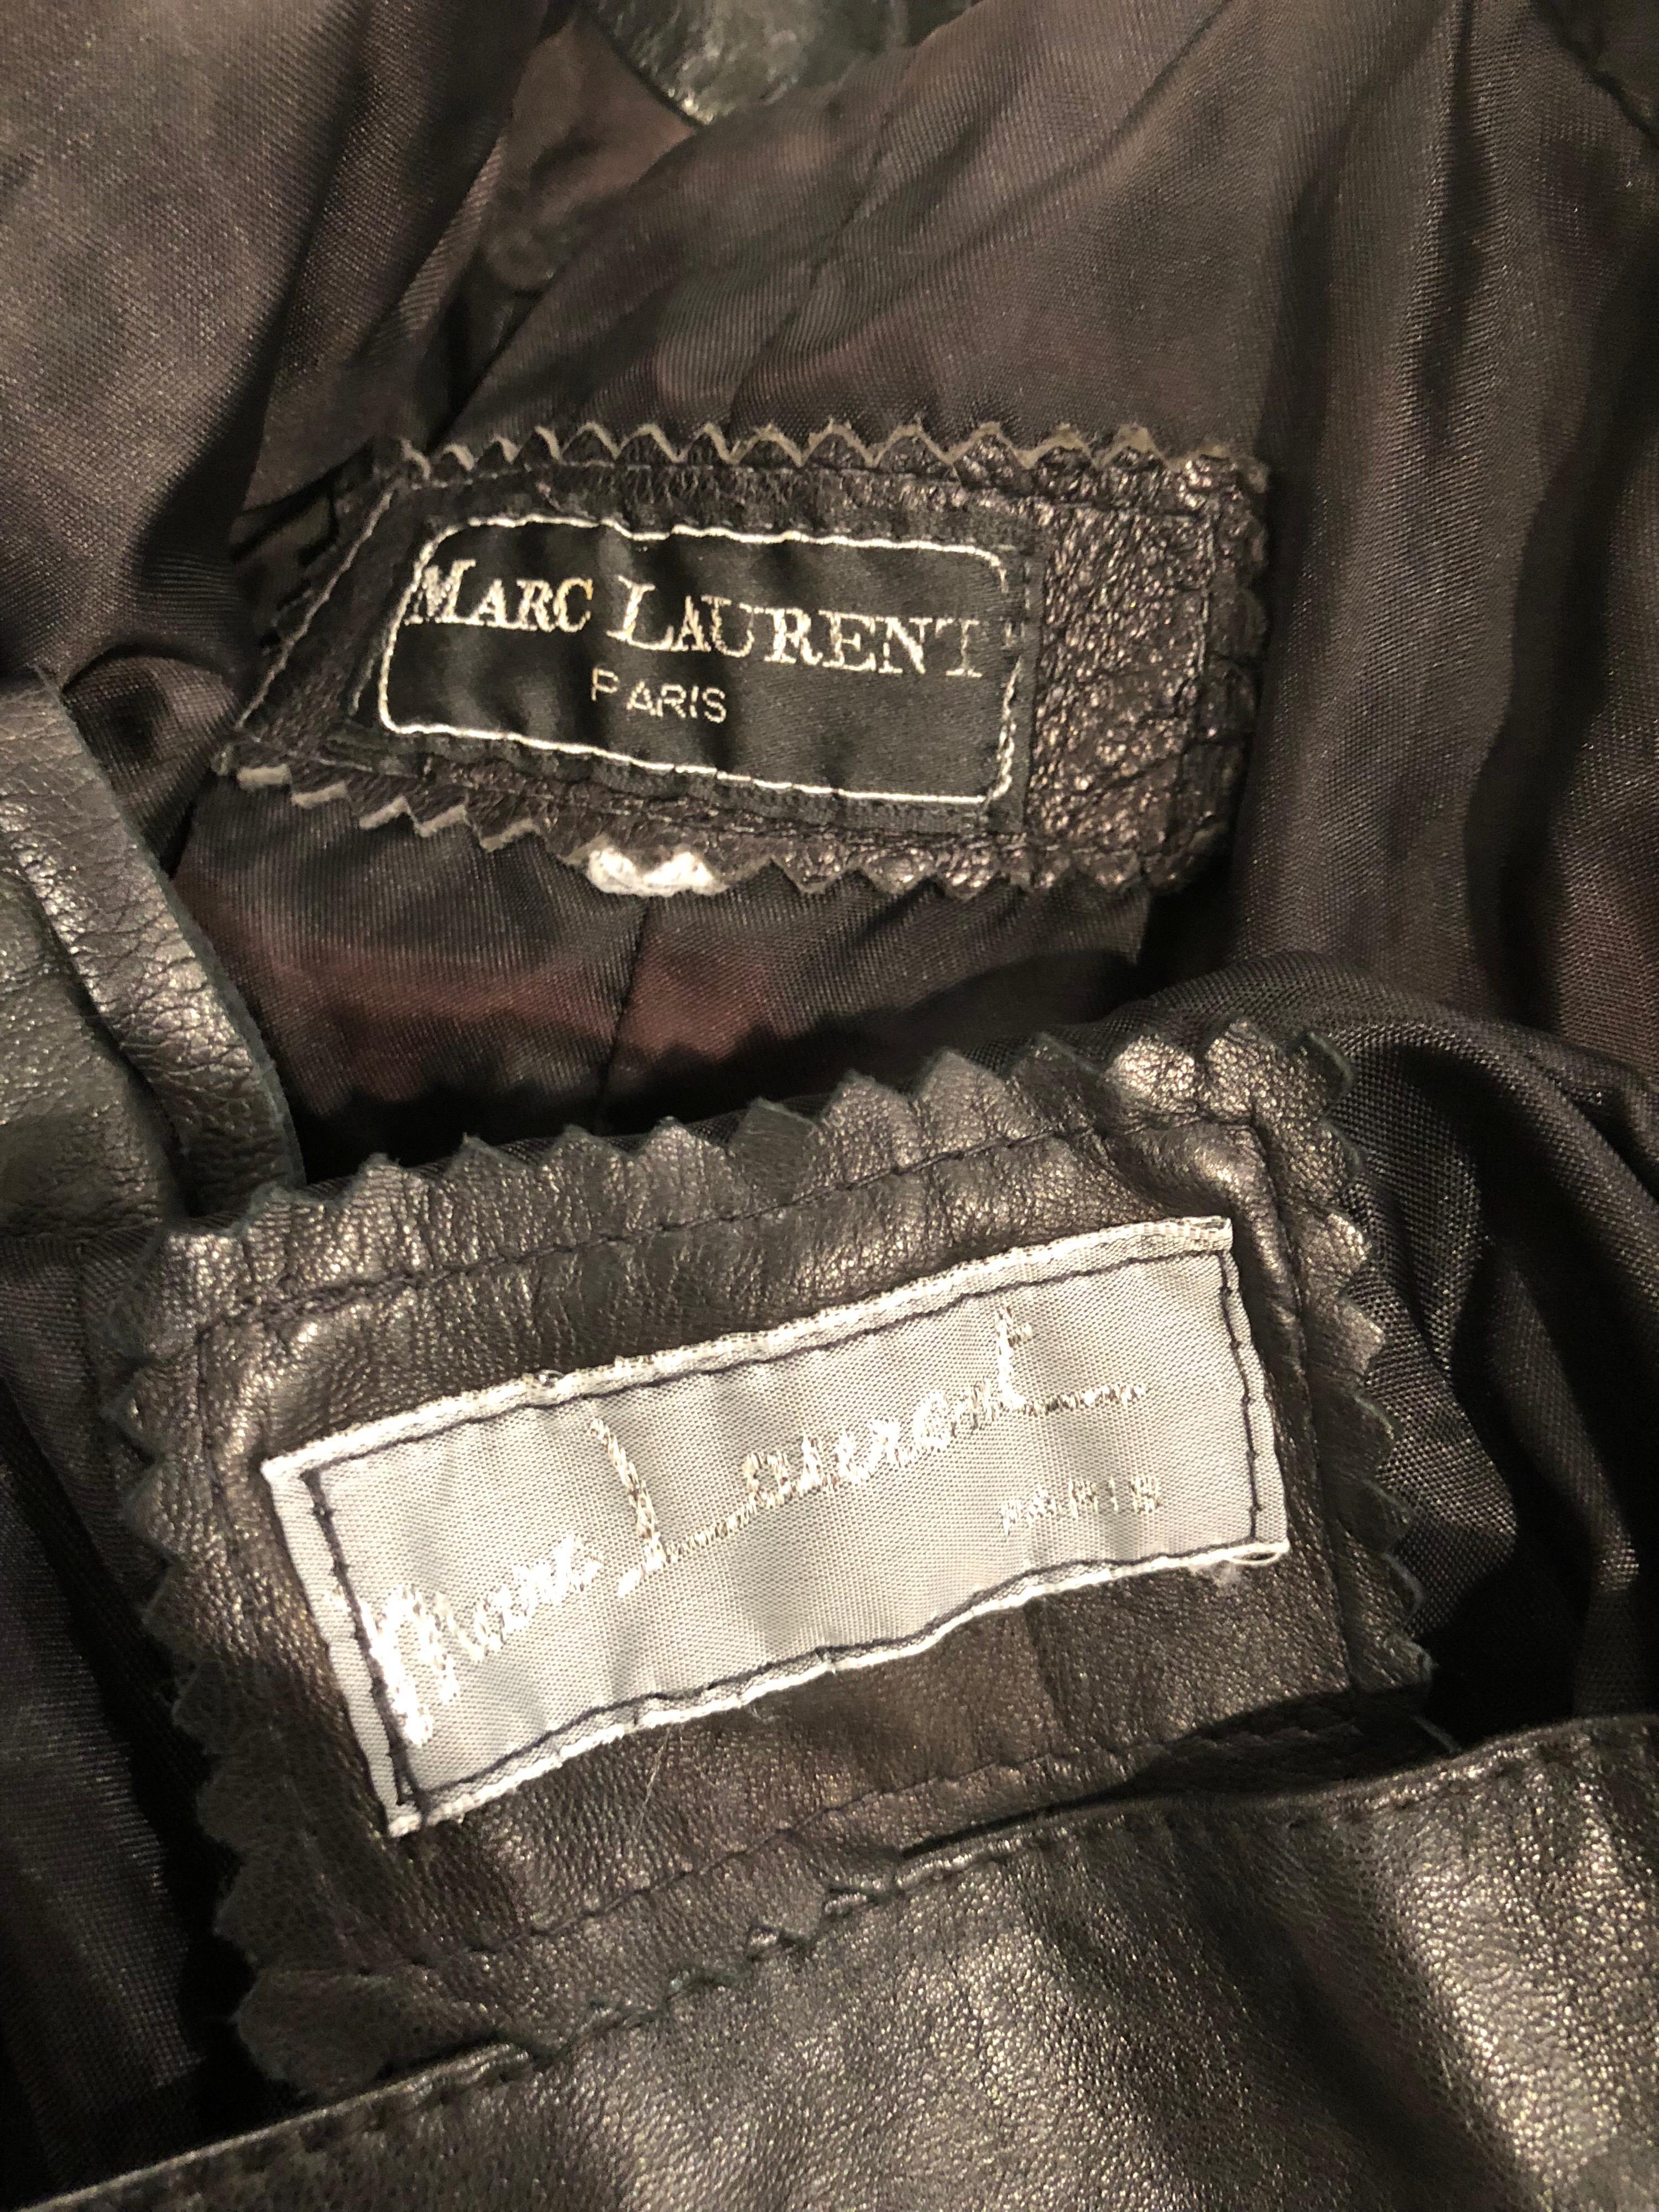 1980s Marc Laurent Paris Black Leather Avant Garde 80s Jacket + Mini Skirt Suit For Sale 6